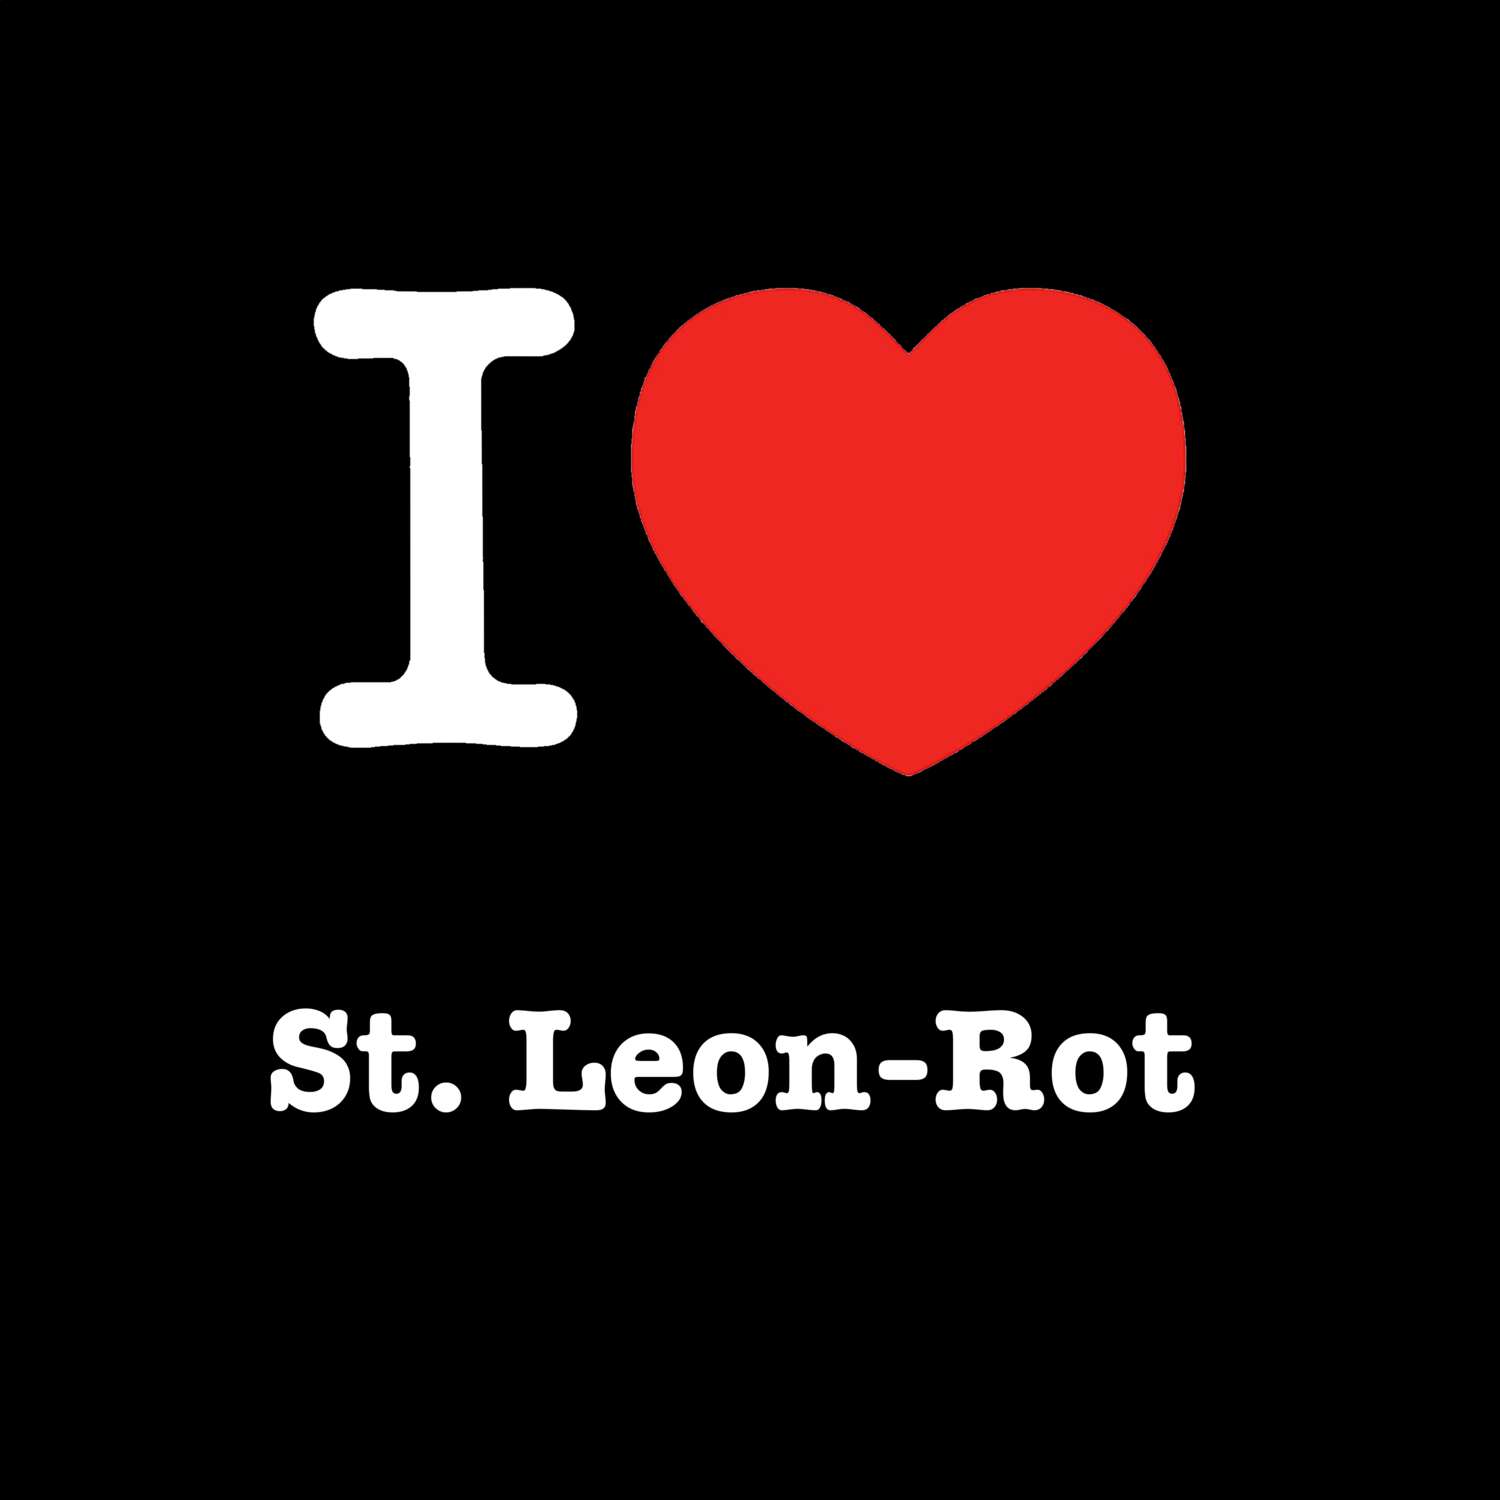 St. Leon-Rot T-Shirt »I love«